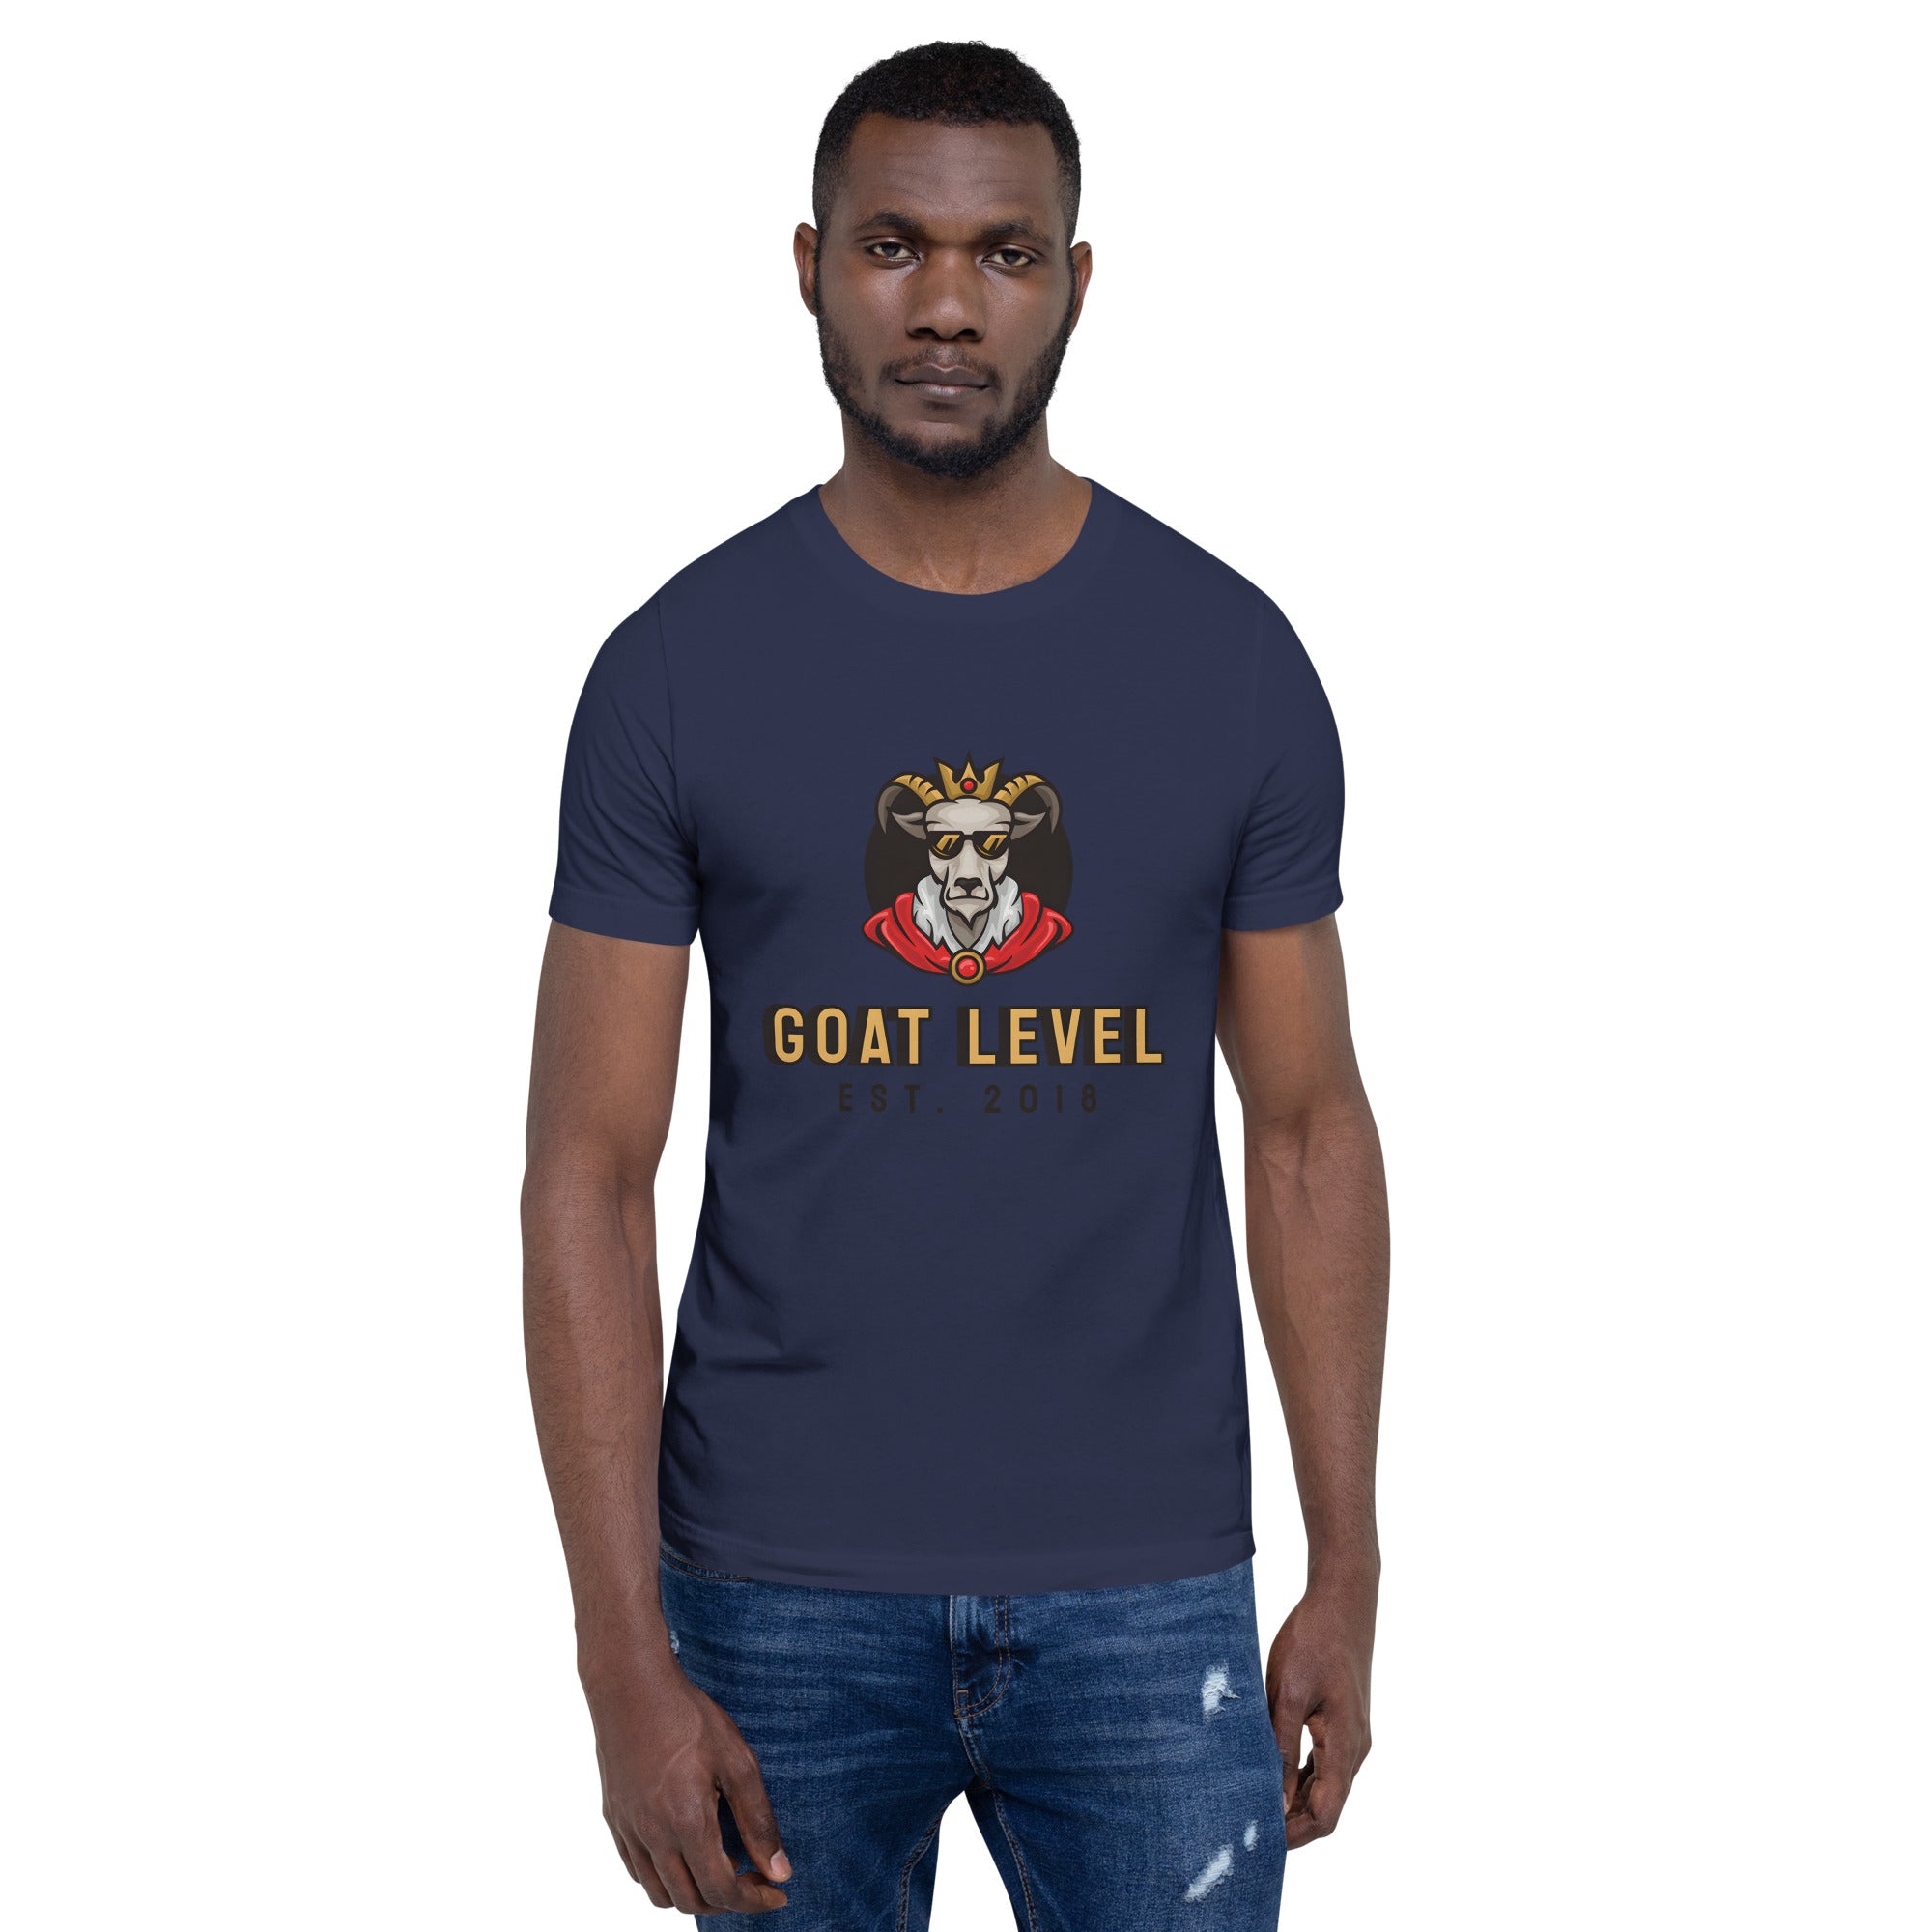 GOAT Level 2018 Unisex t-shirt